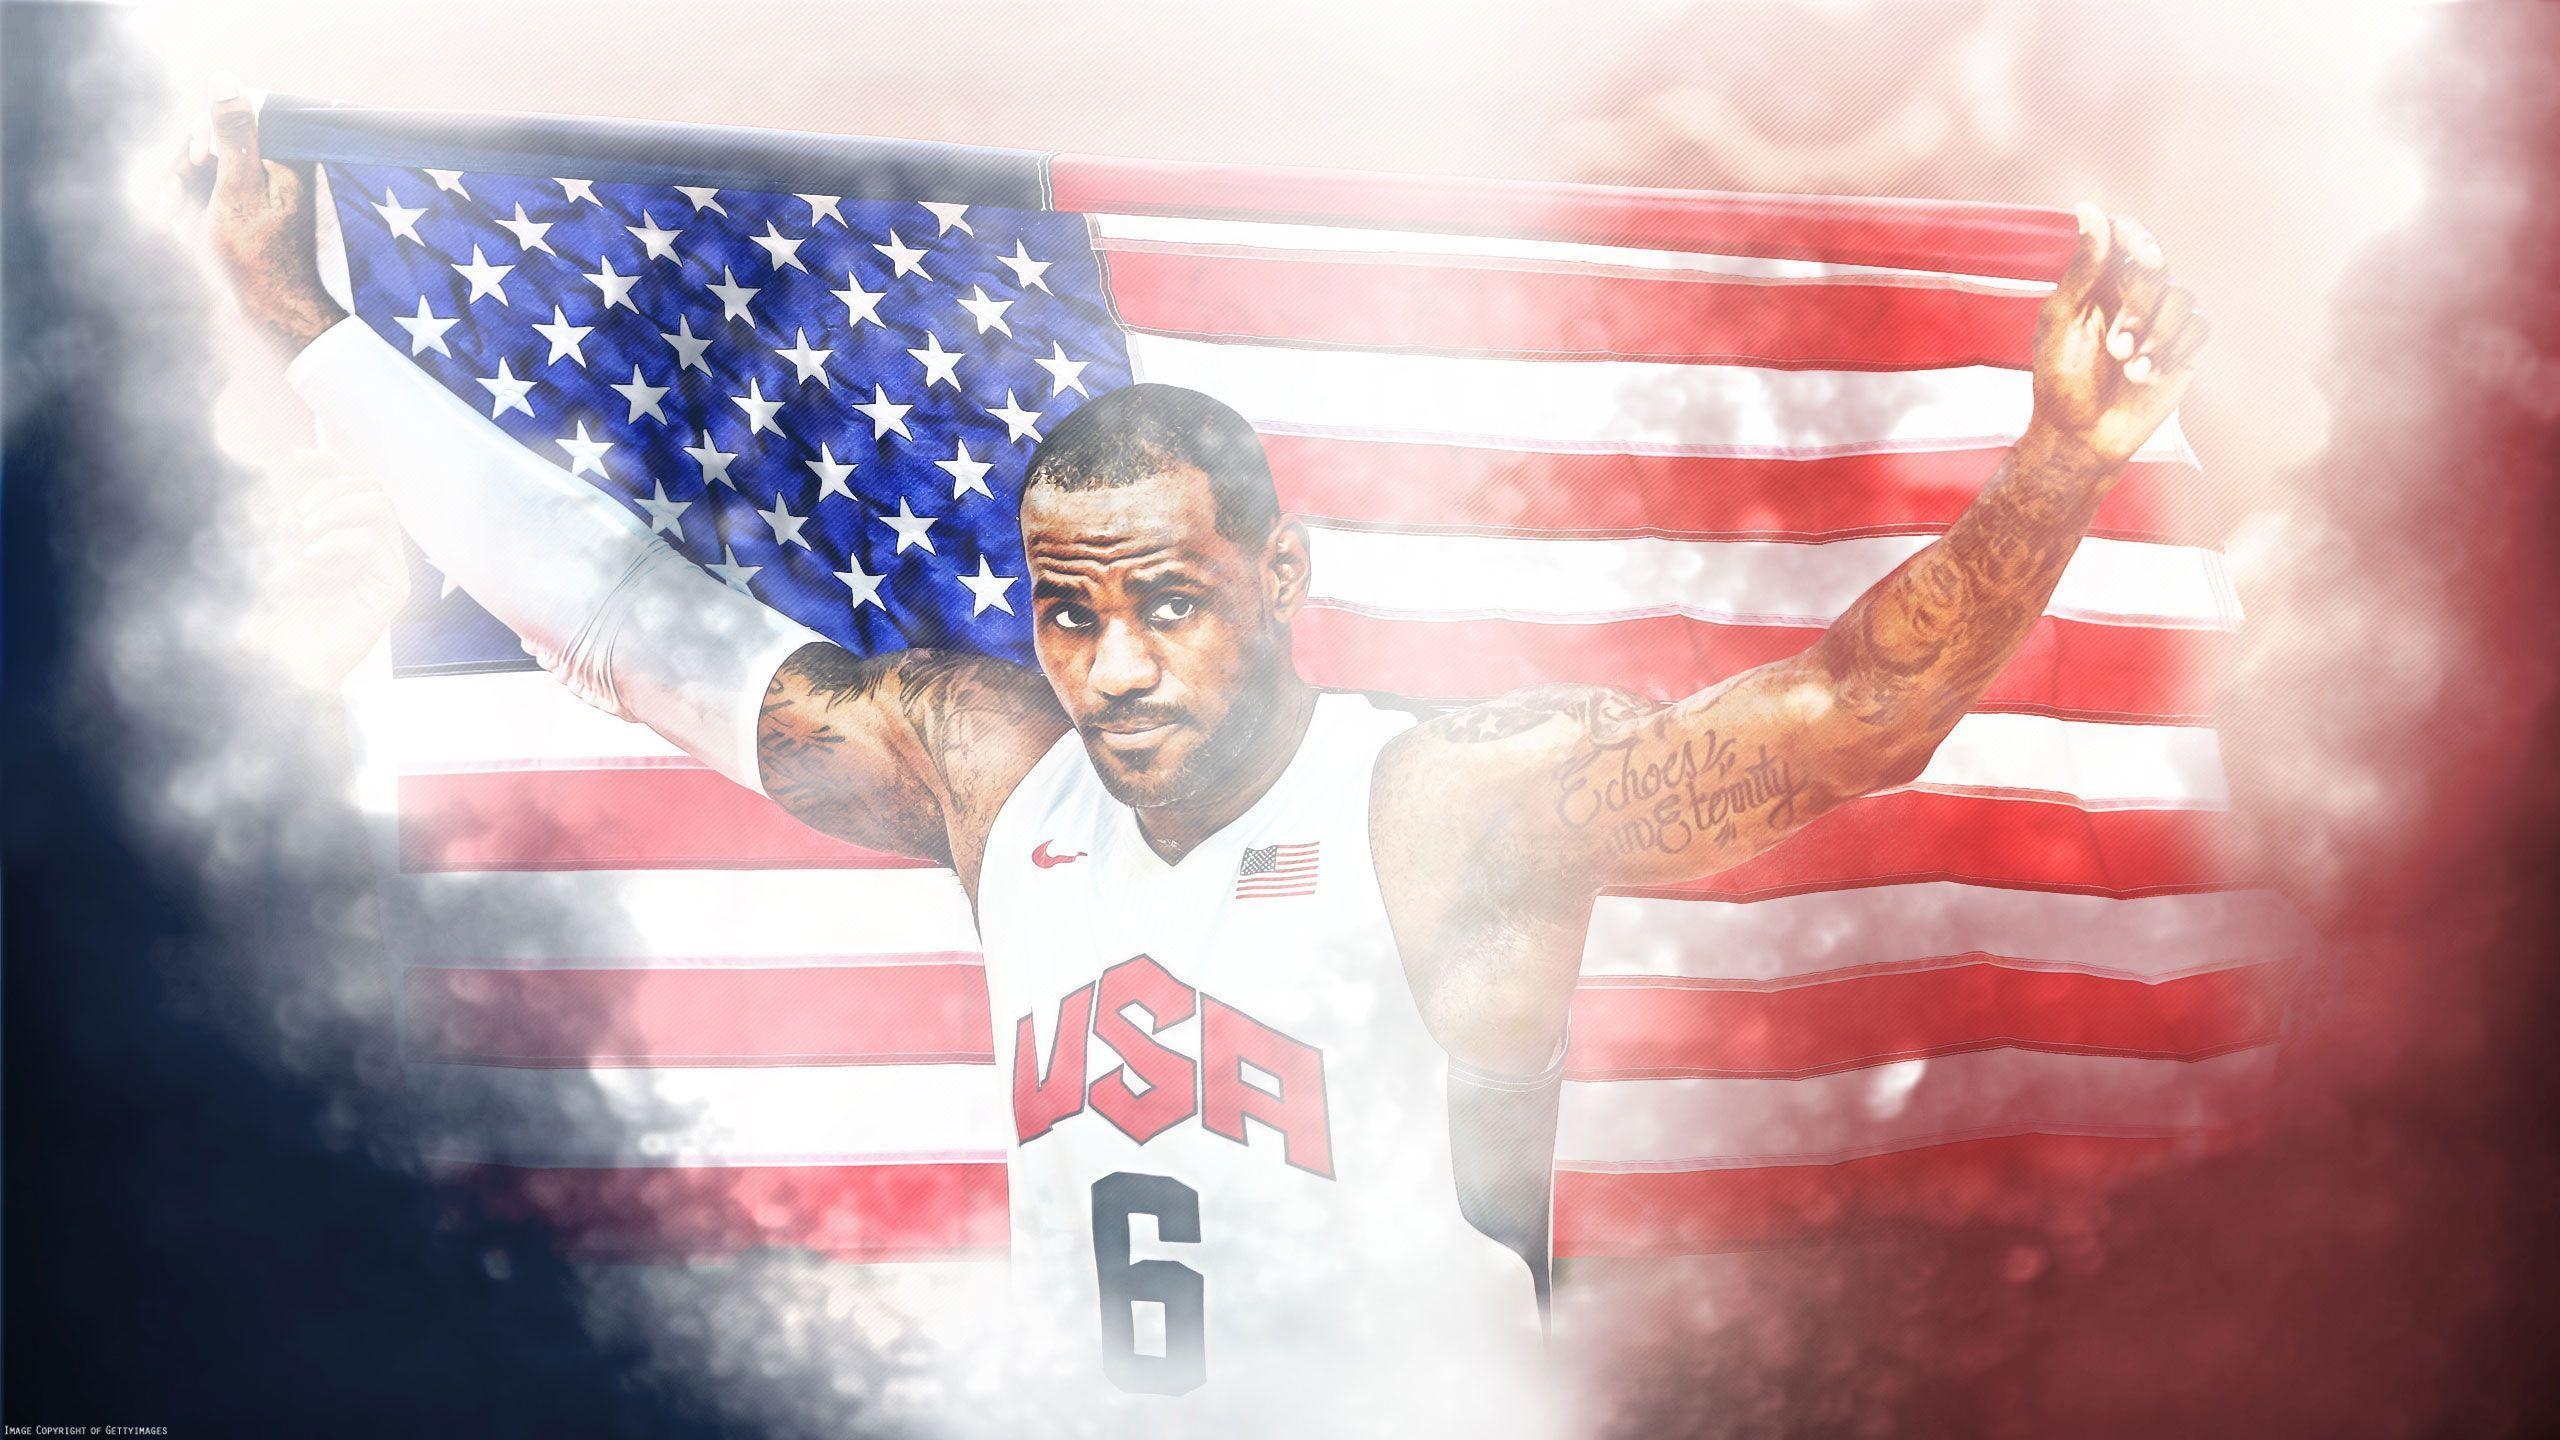 LeBron James London 2012 USA Flag 2560×1440 Wallpaper. Basketball